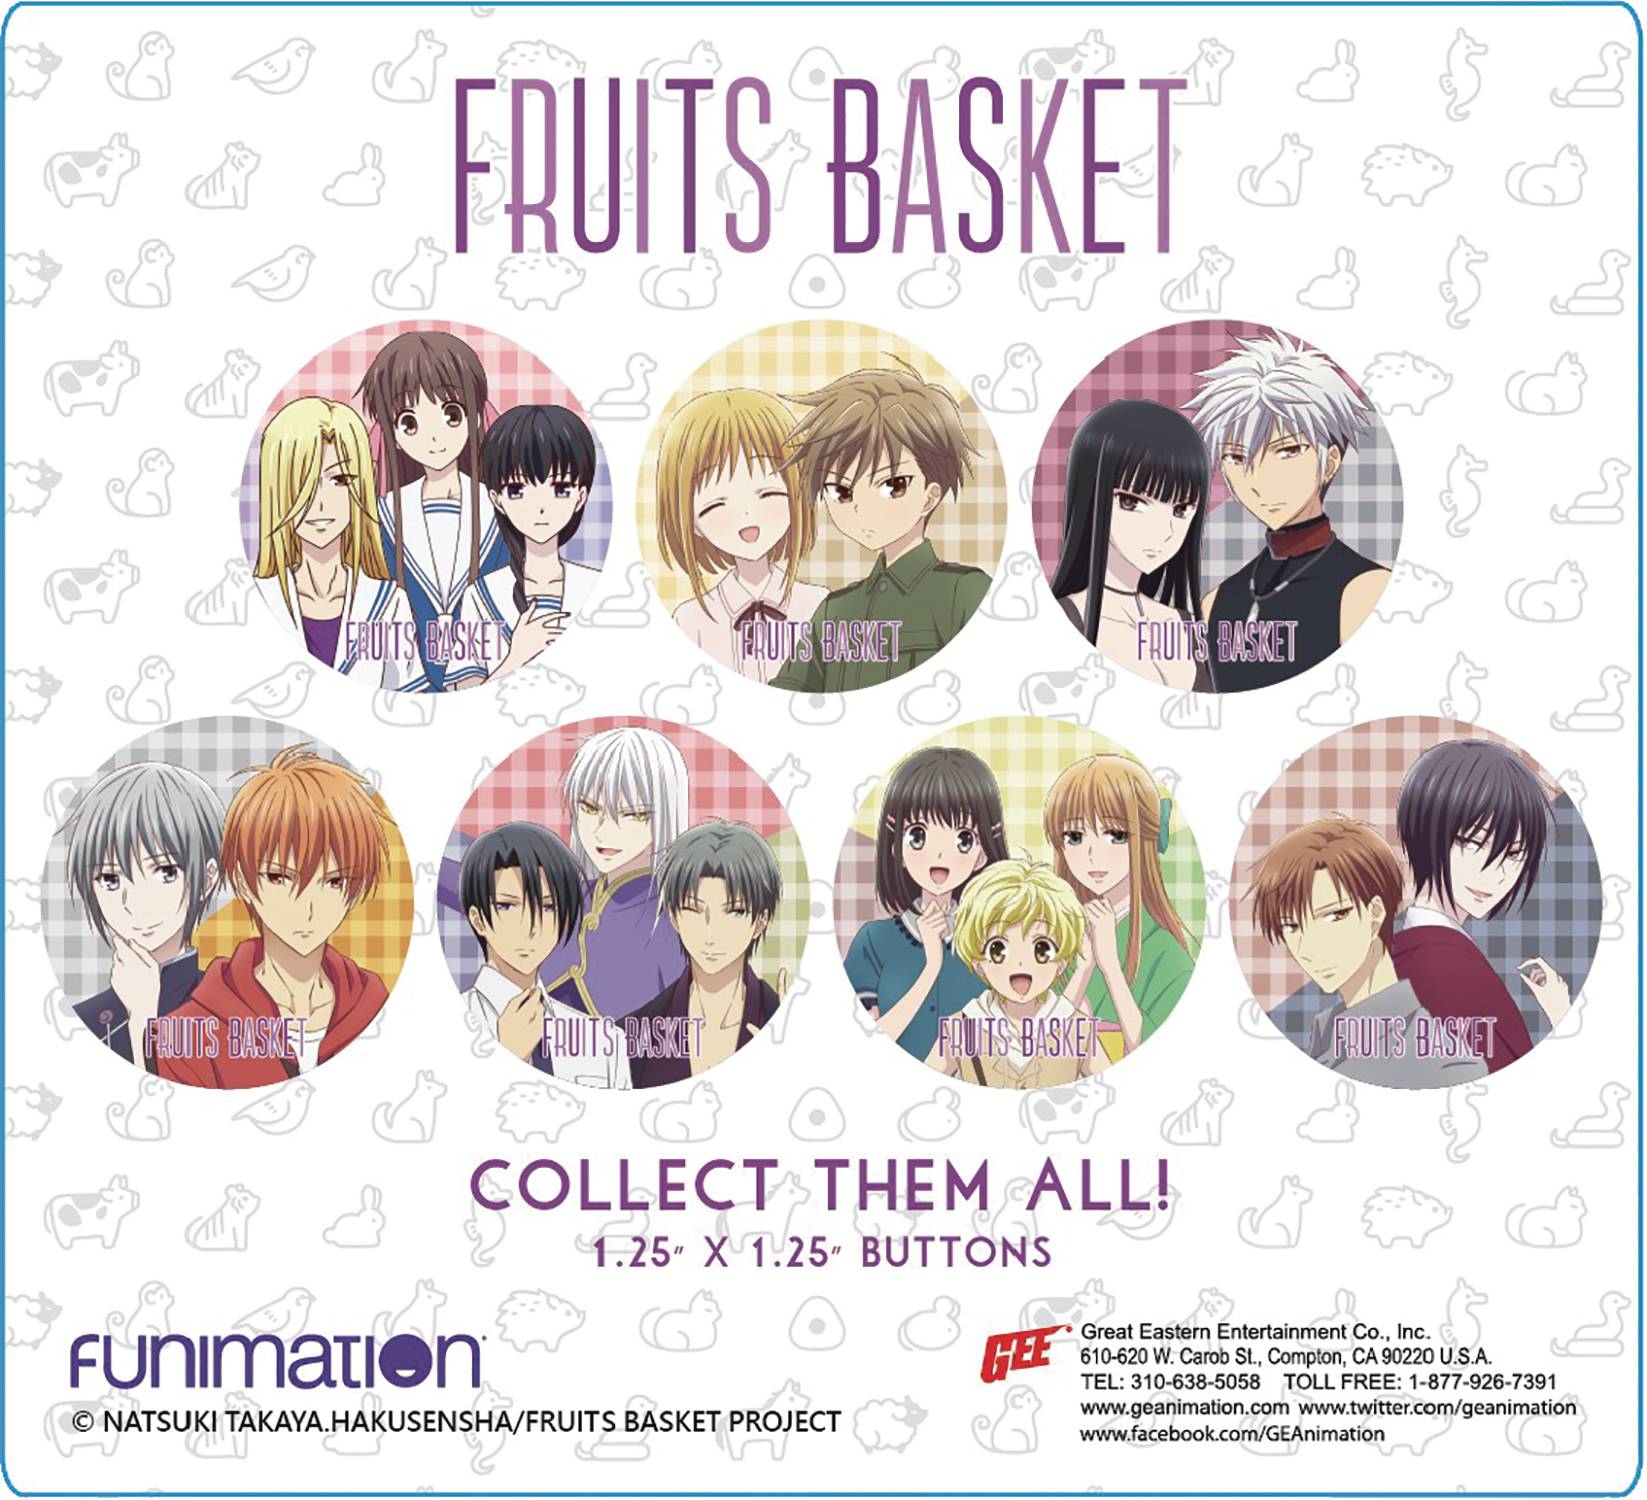 Fruits Basket (2019) - Info Anime